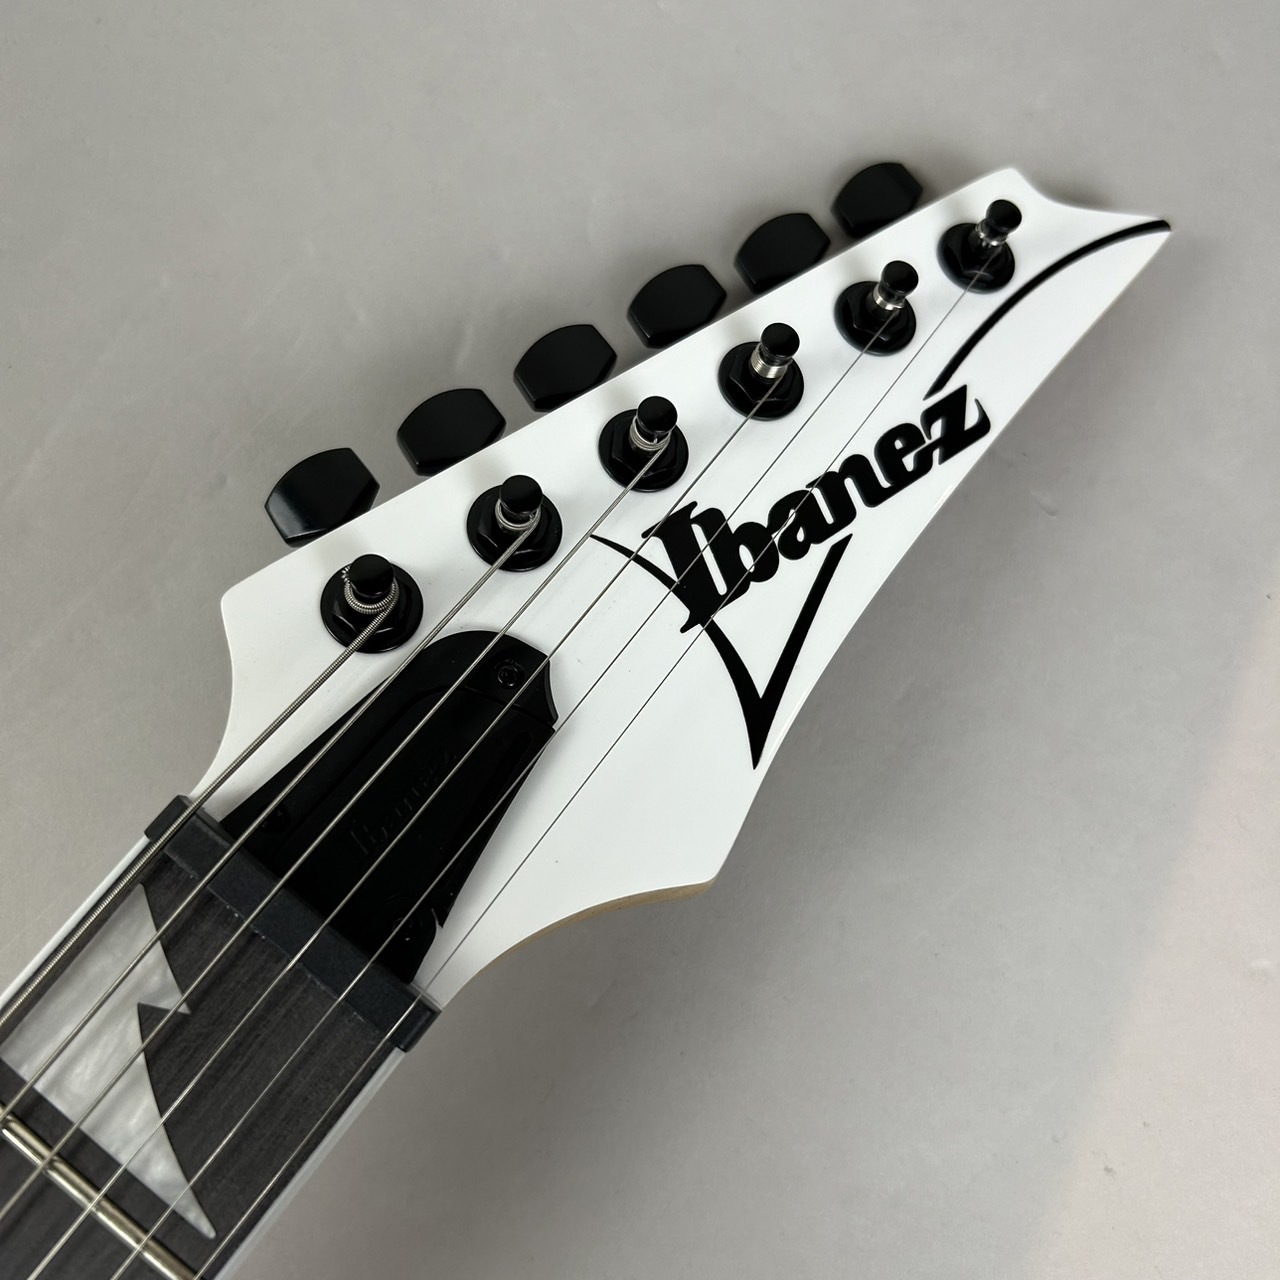 Ibanez RGV250 WH ホワイト エレキギター ストラトキャスタータイプ 